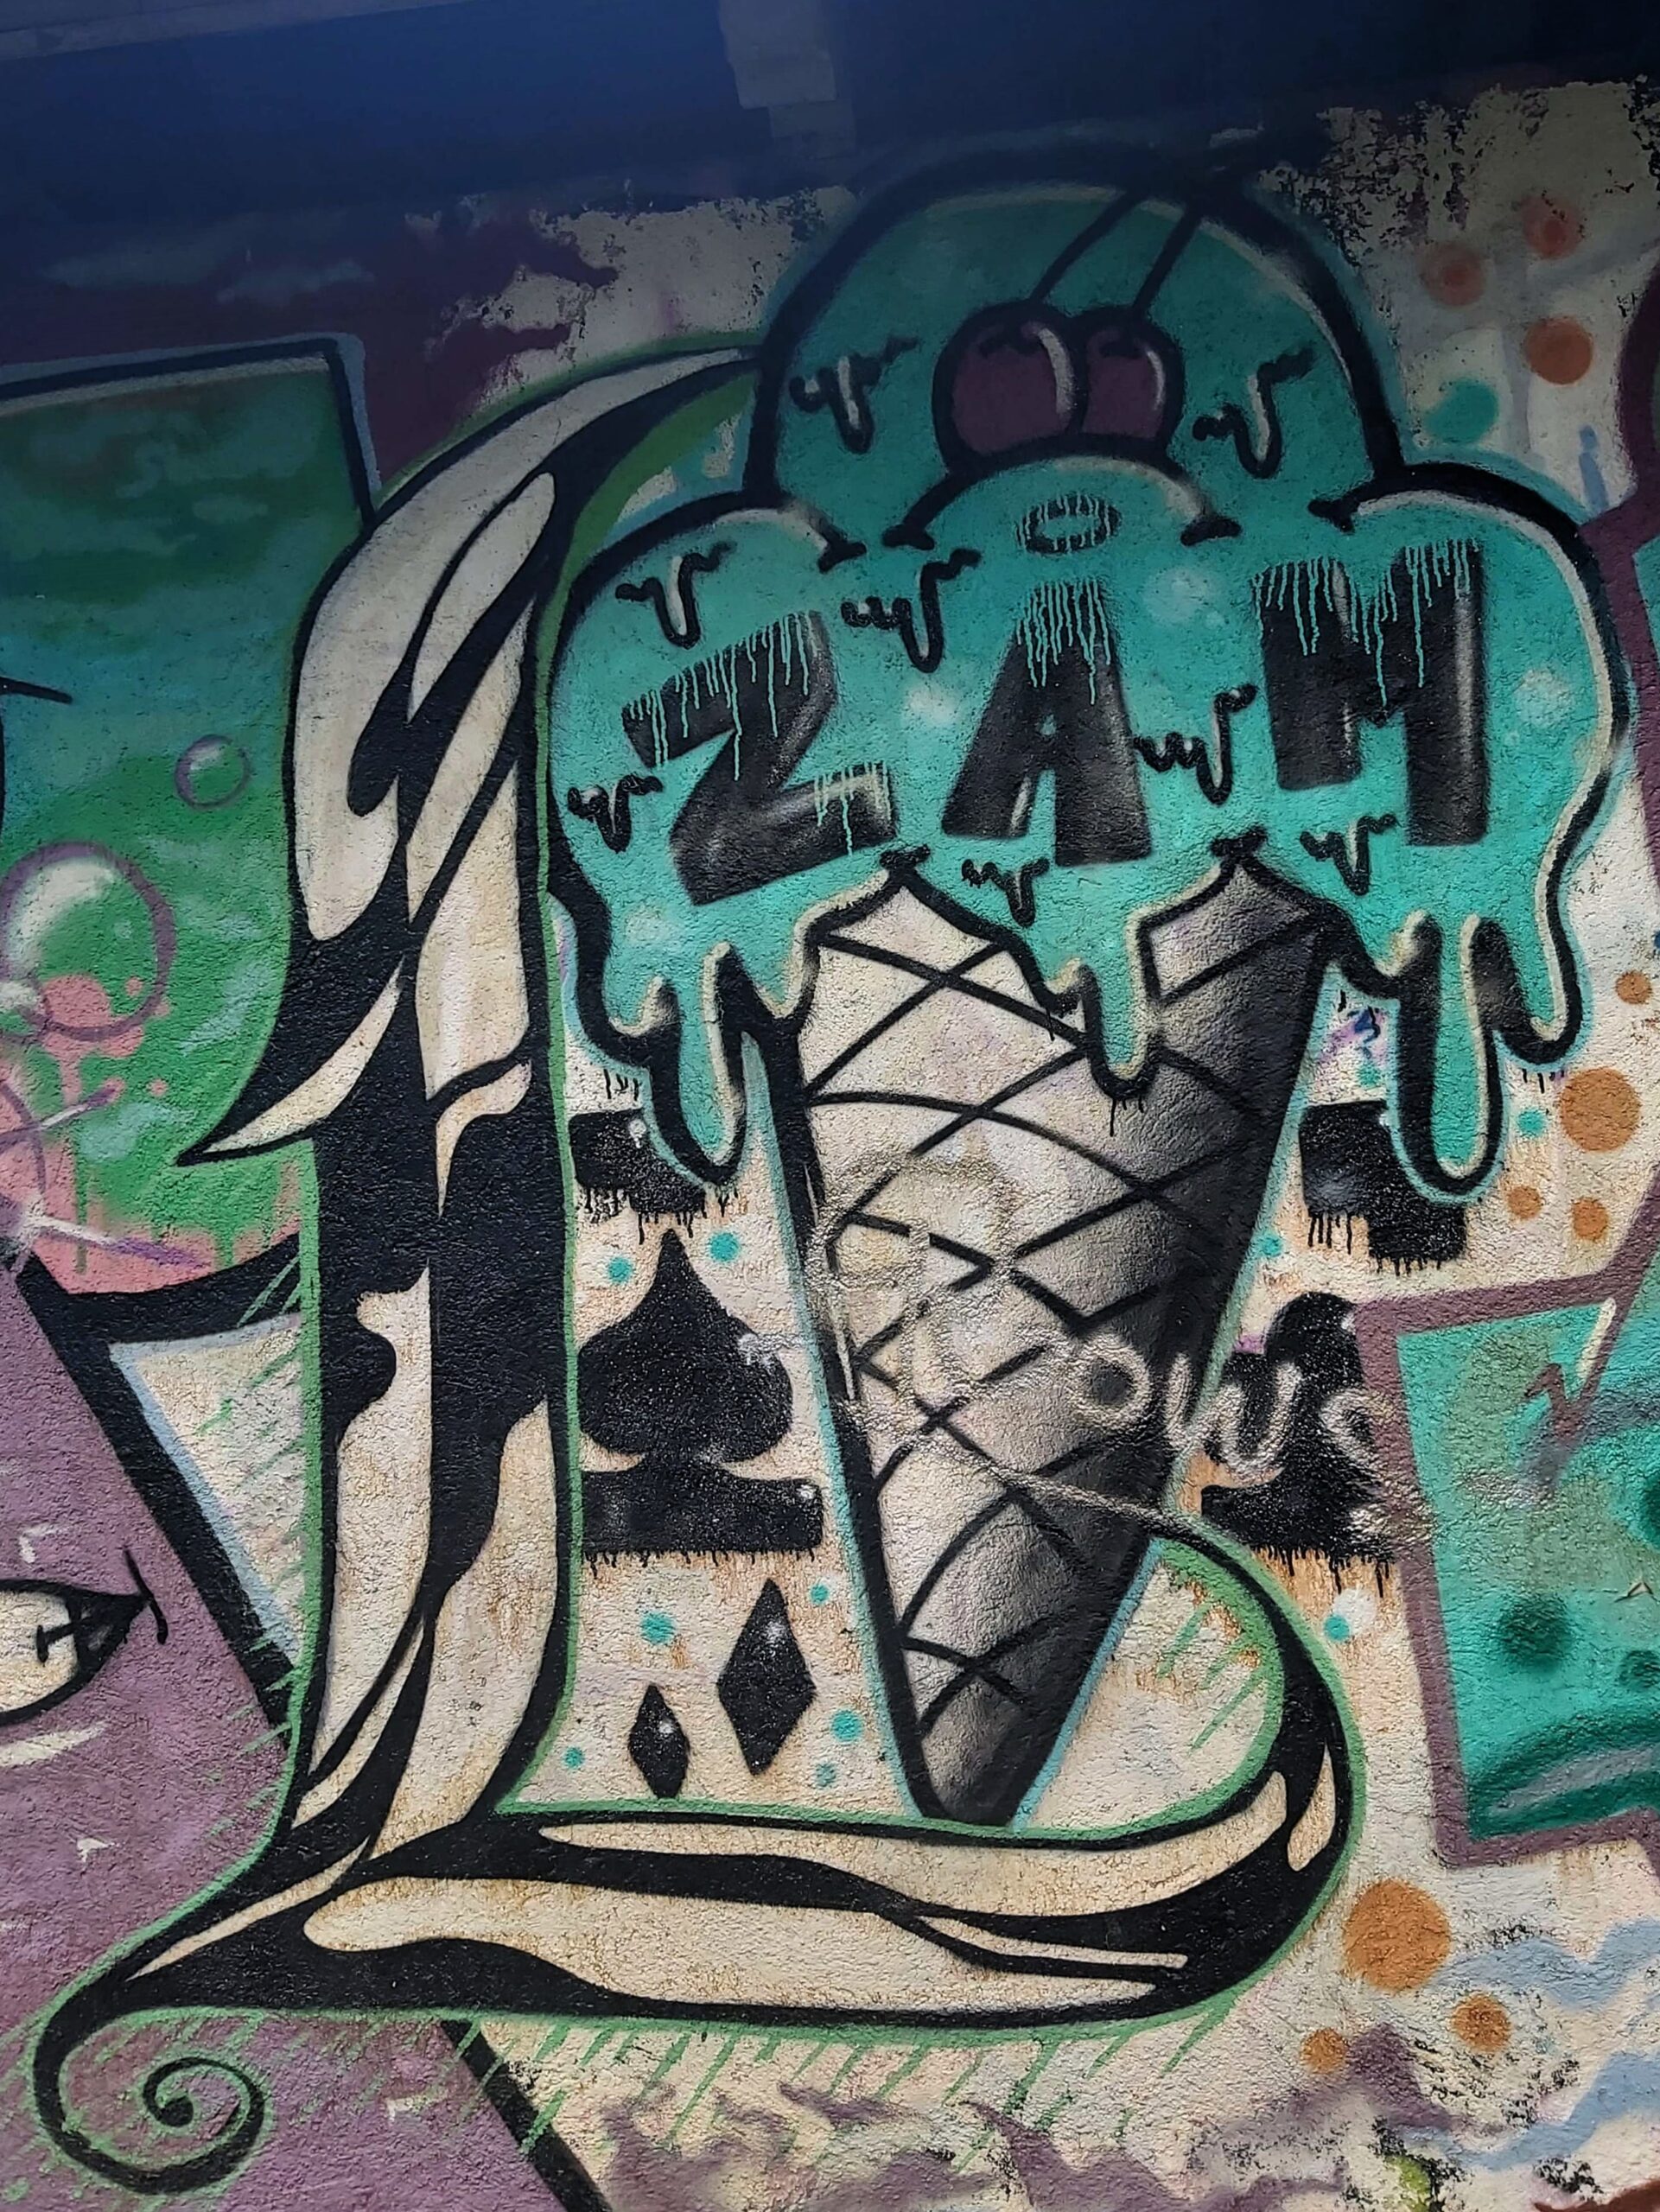 Graffiti in Timisoara, Romania. Ice cream